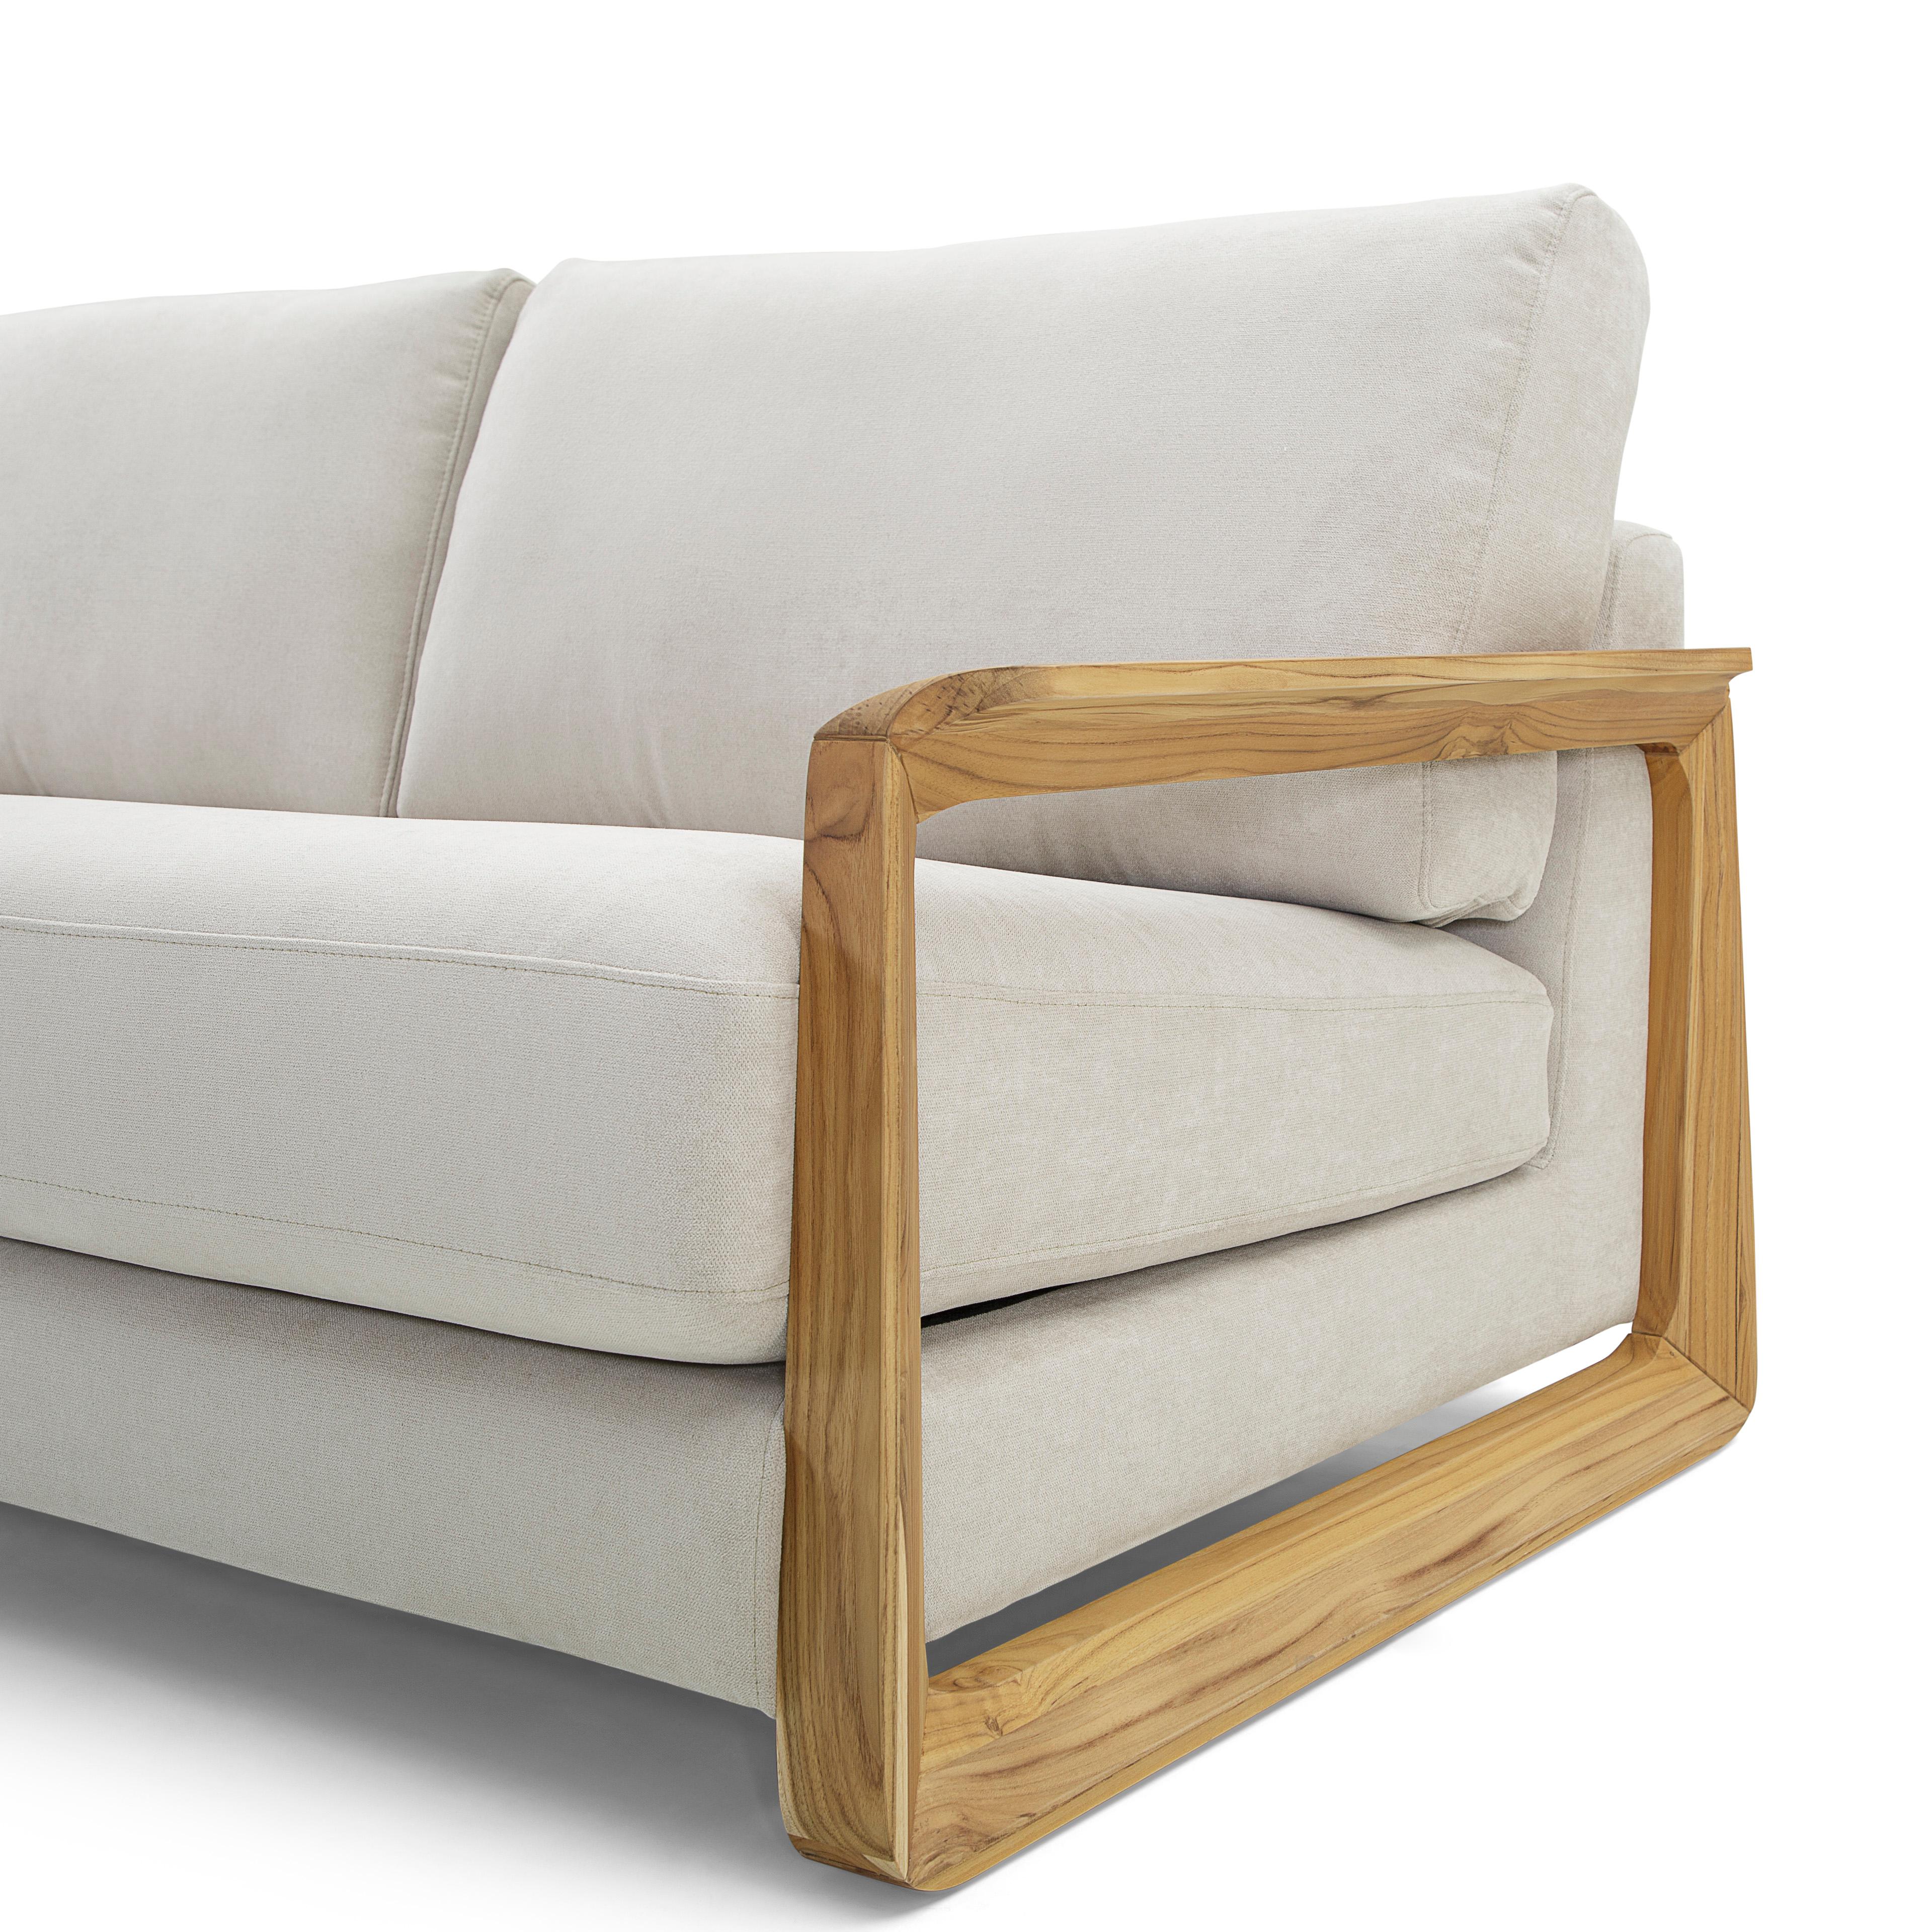 Das Sofa Fine Contemporary ist mit einem herrlichen hafergrünen Stoff bezogen und die Armlehnen sind aus Teakholz gefertigt - die perfekte Kombination für Ihr Wohnzimmer. So entspannend er auch aussieht, der eigentliche Sitz ist noch besser. Dieses